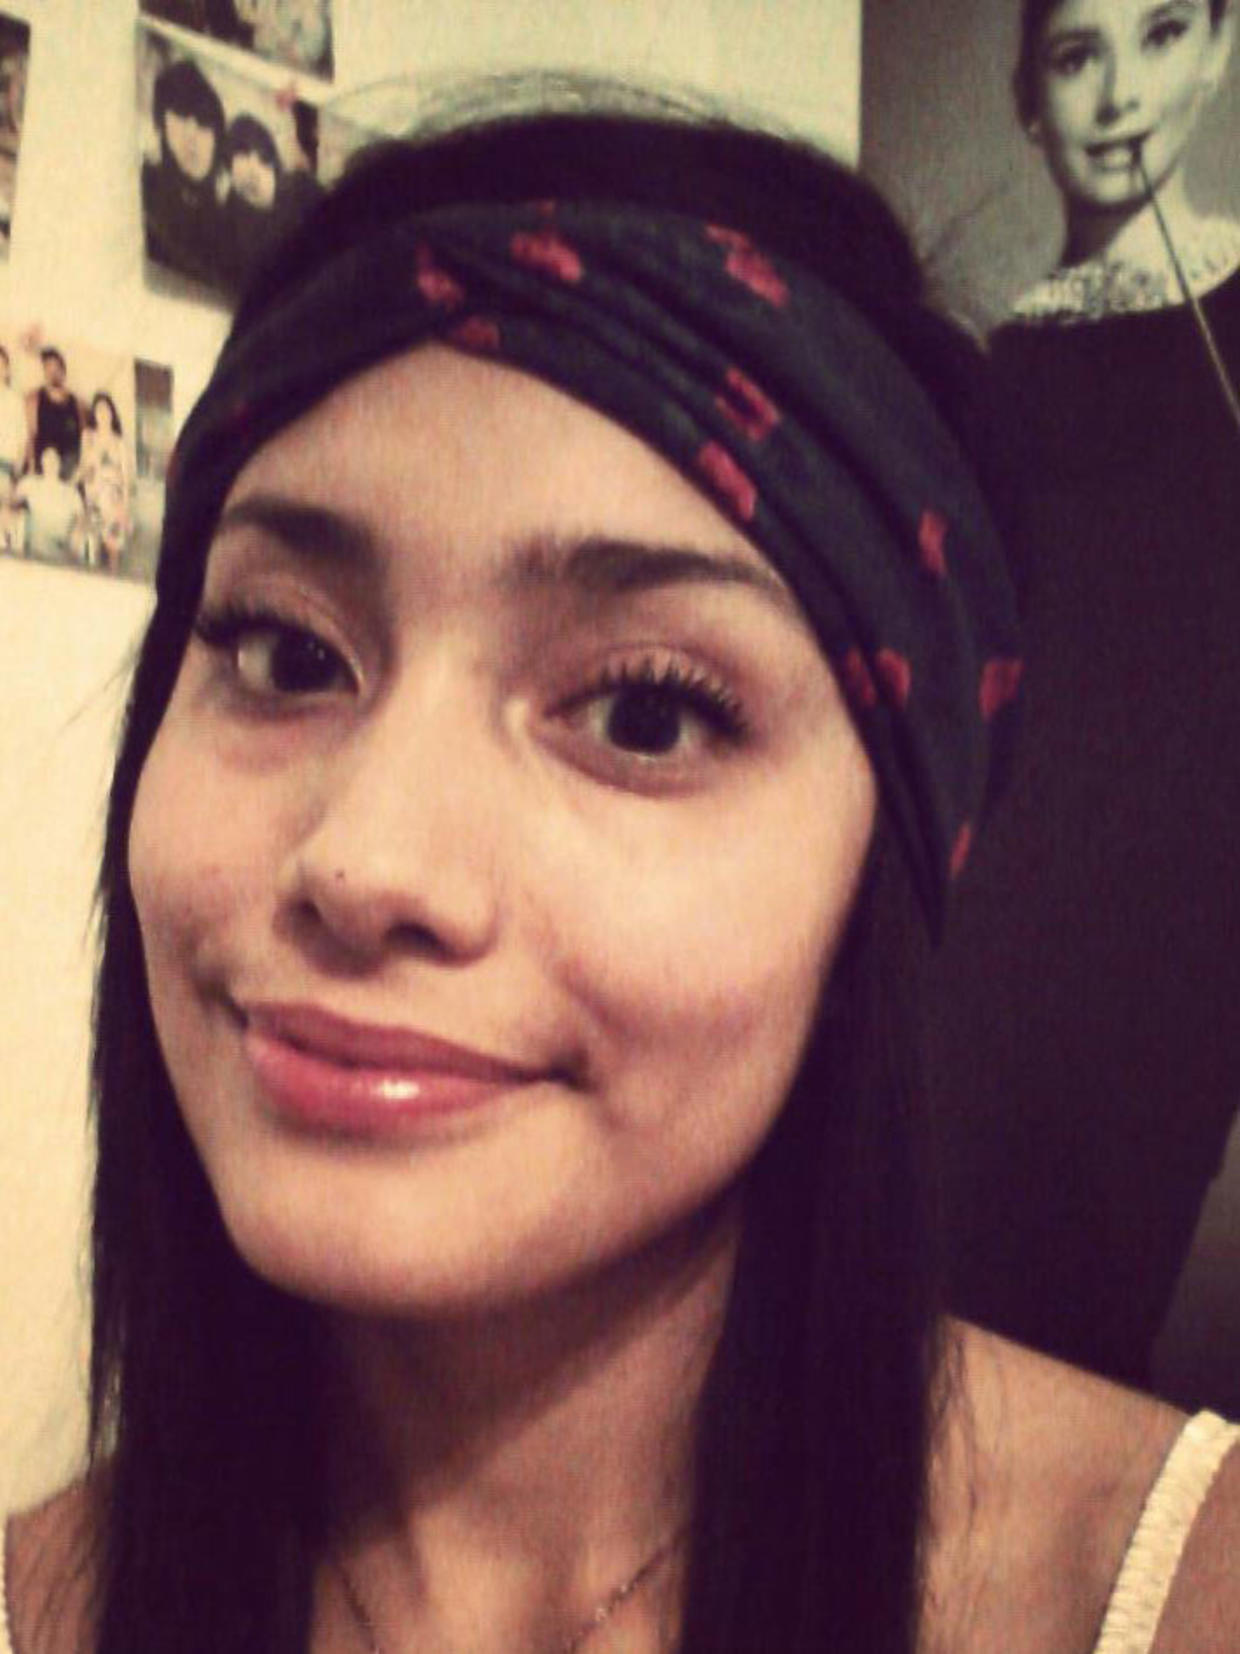 Adrienne Salinas: Remains of missing Ariz. teen found - CBS News